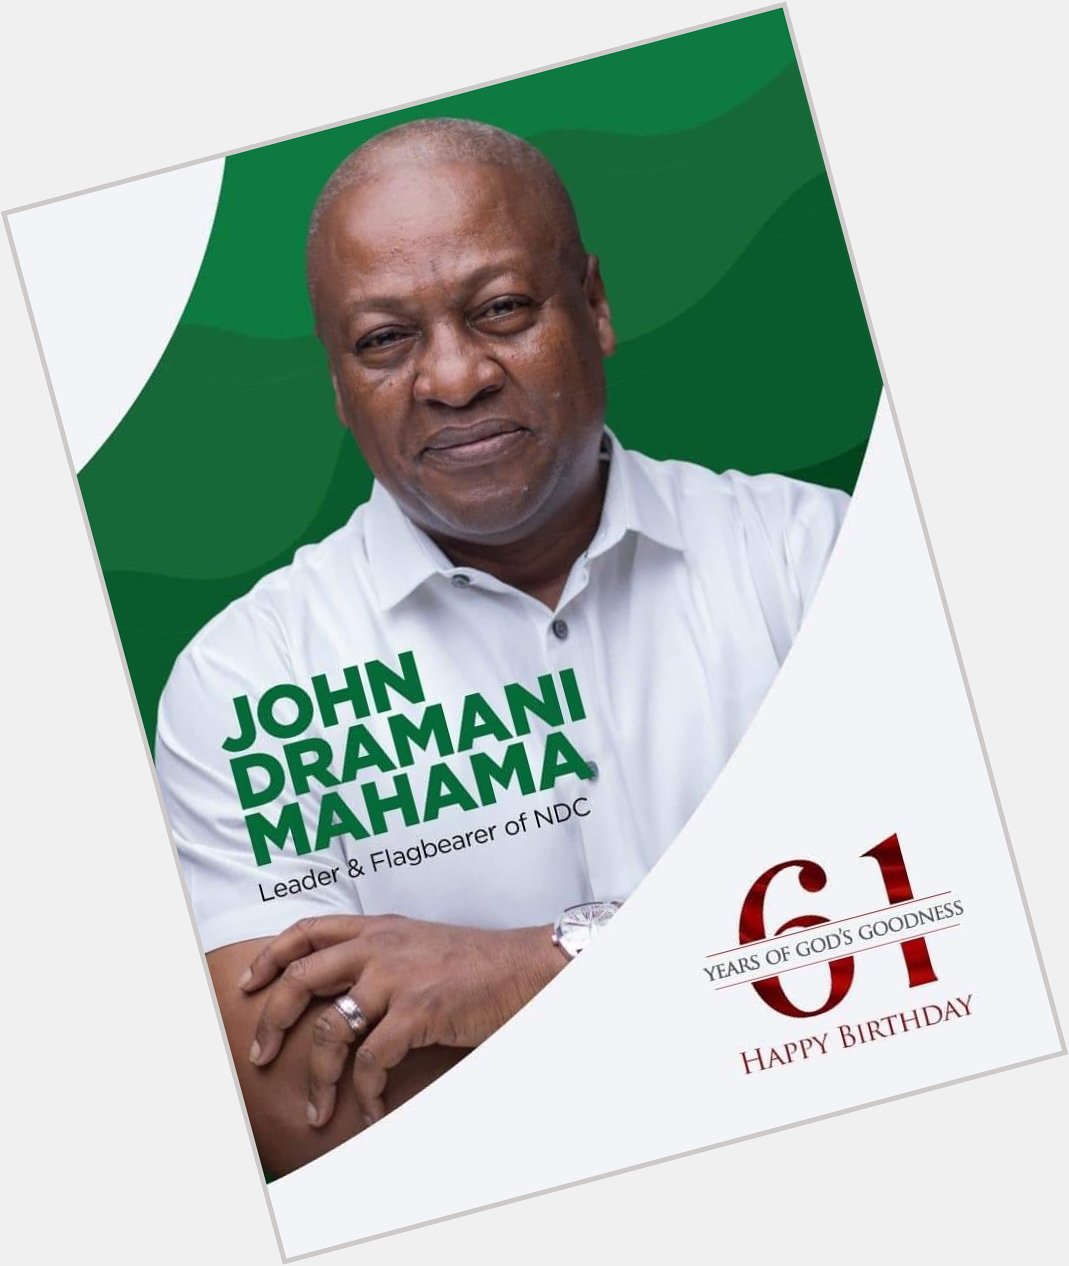 Today marks the 61st birthday of H.E. John Dramani Mahama, former president of Ghana. Happy birthday Sir! 